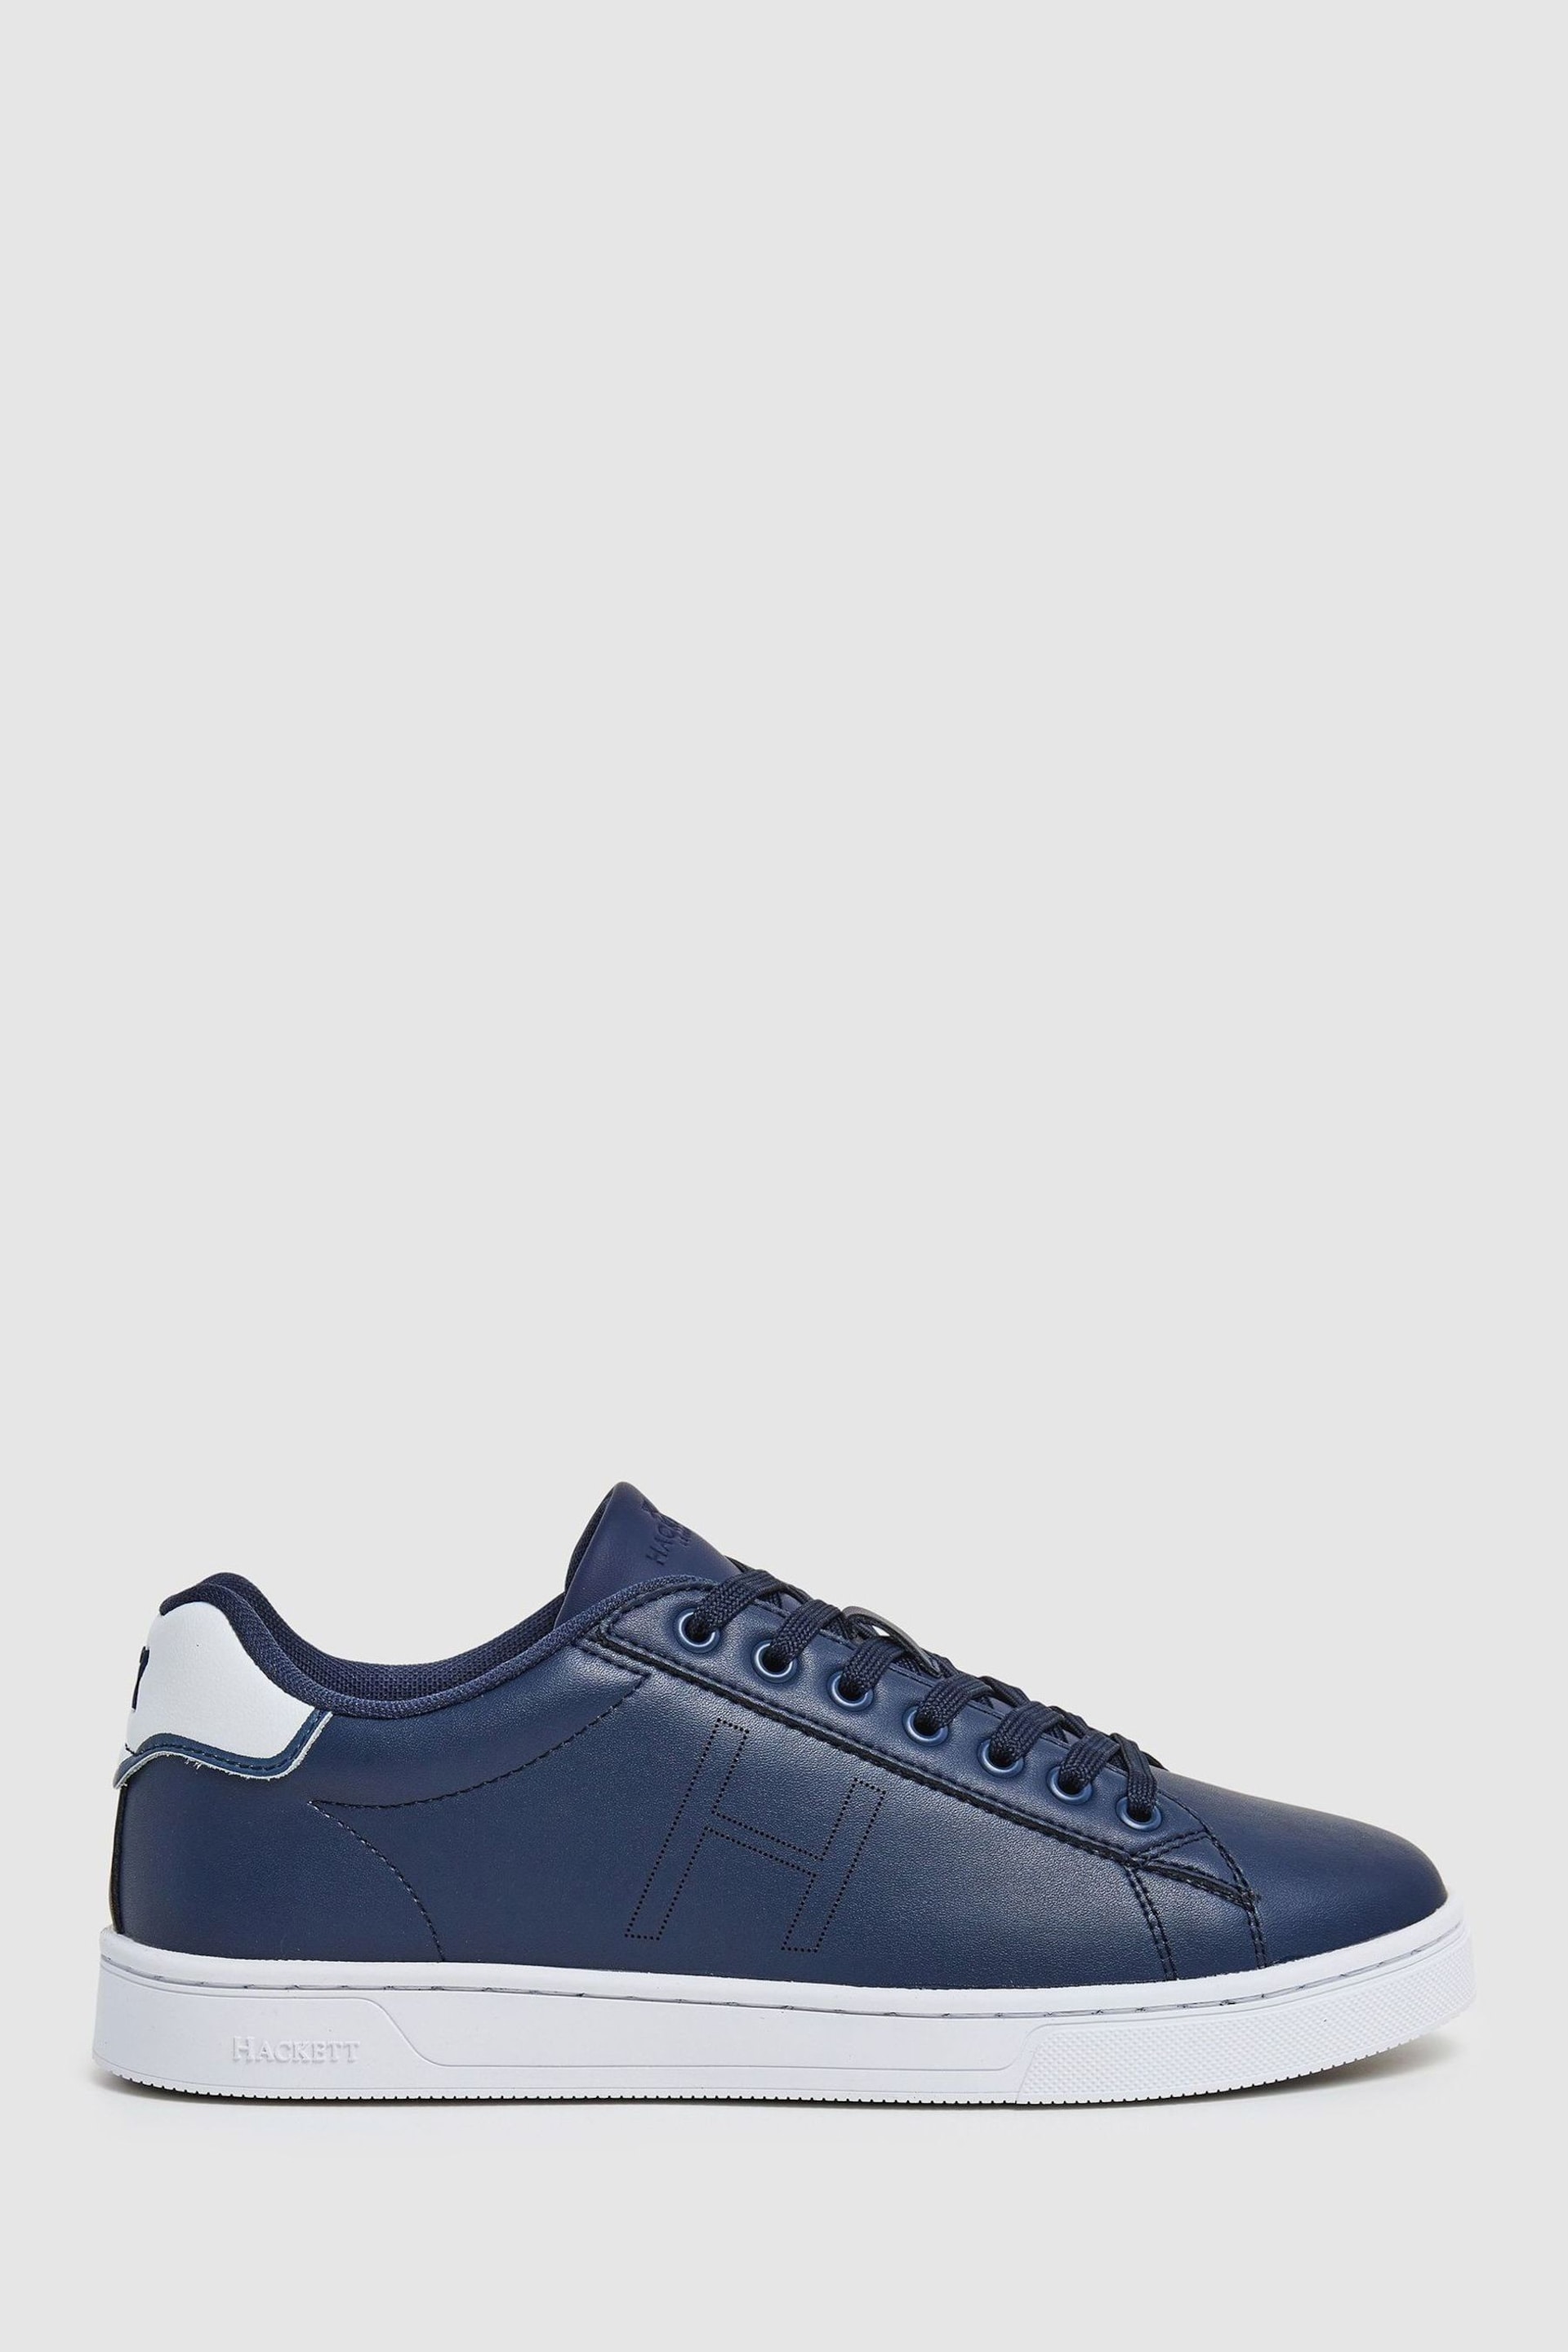 Hackett London Men Blue Sportive Sneakers - Image 1 of 6